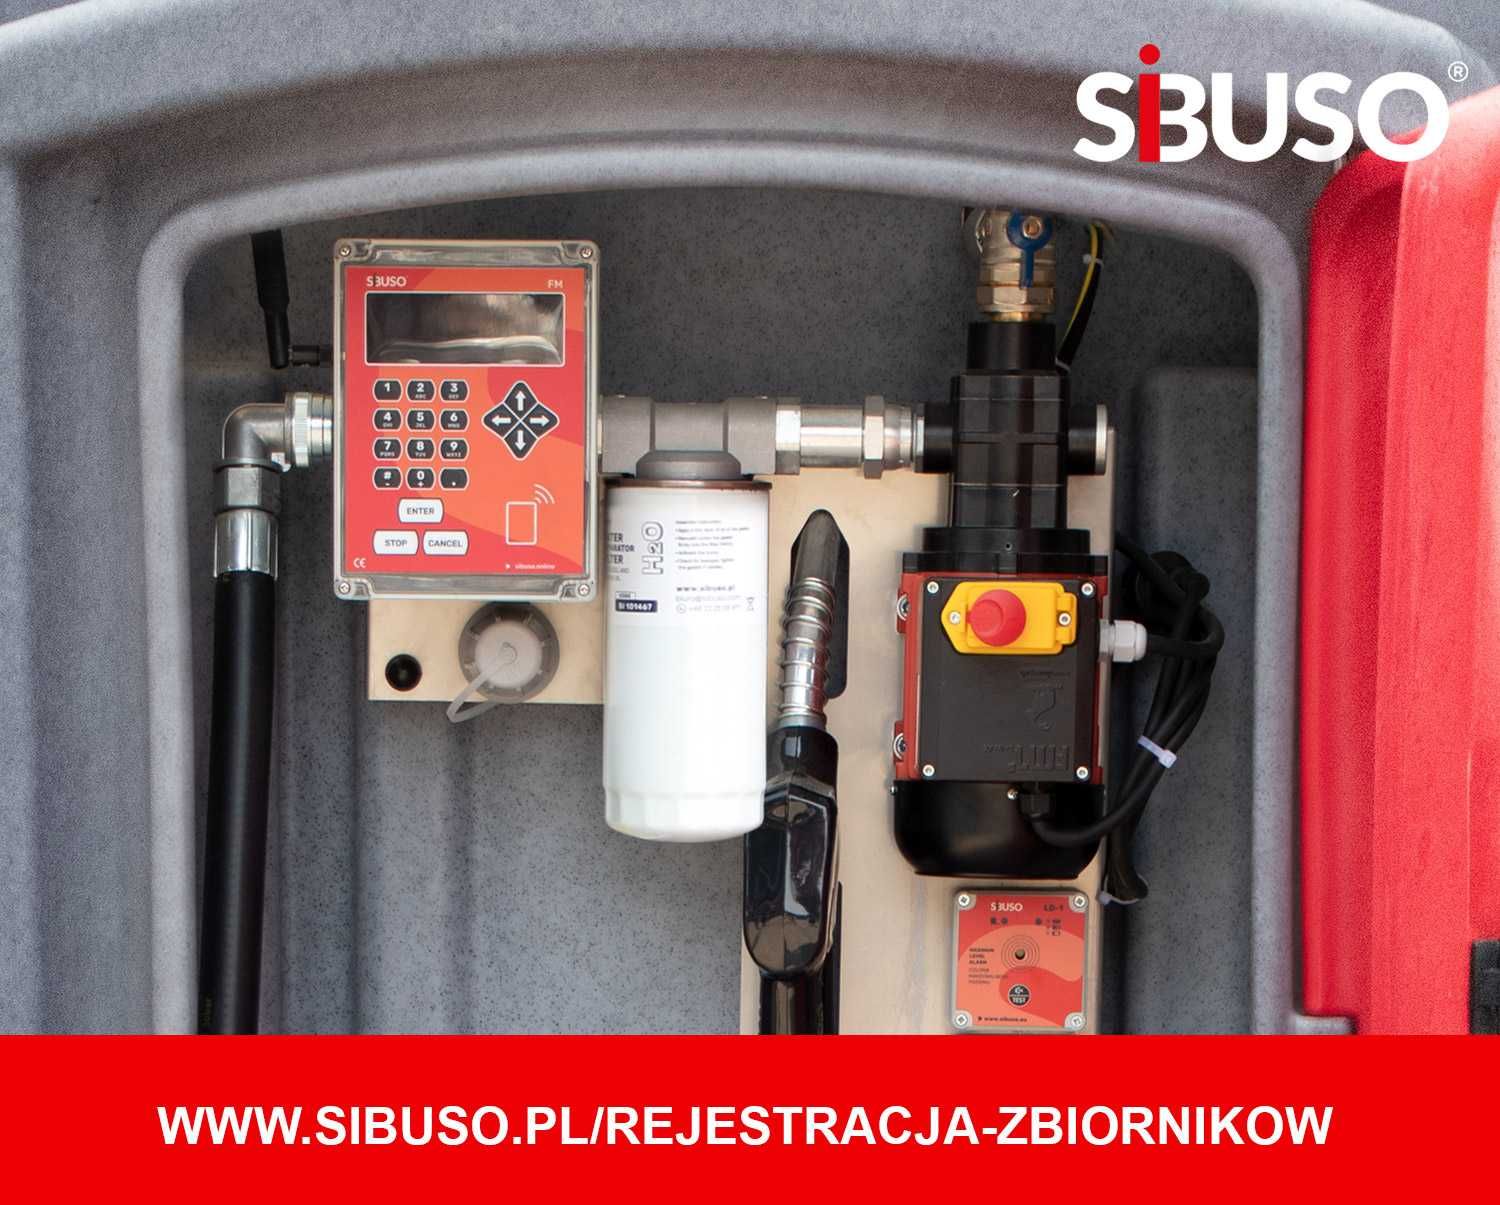 Zbiornik paliwo olej napędowy SIBUSO NVCL 2500 5lat gwarancji na pompę